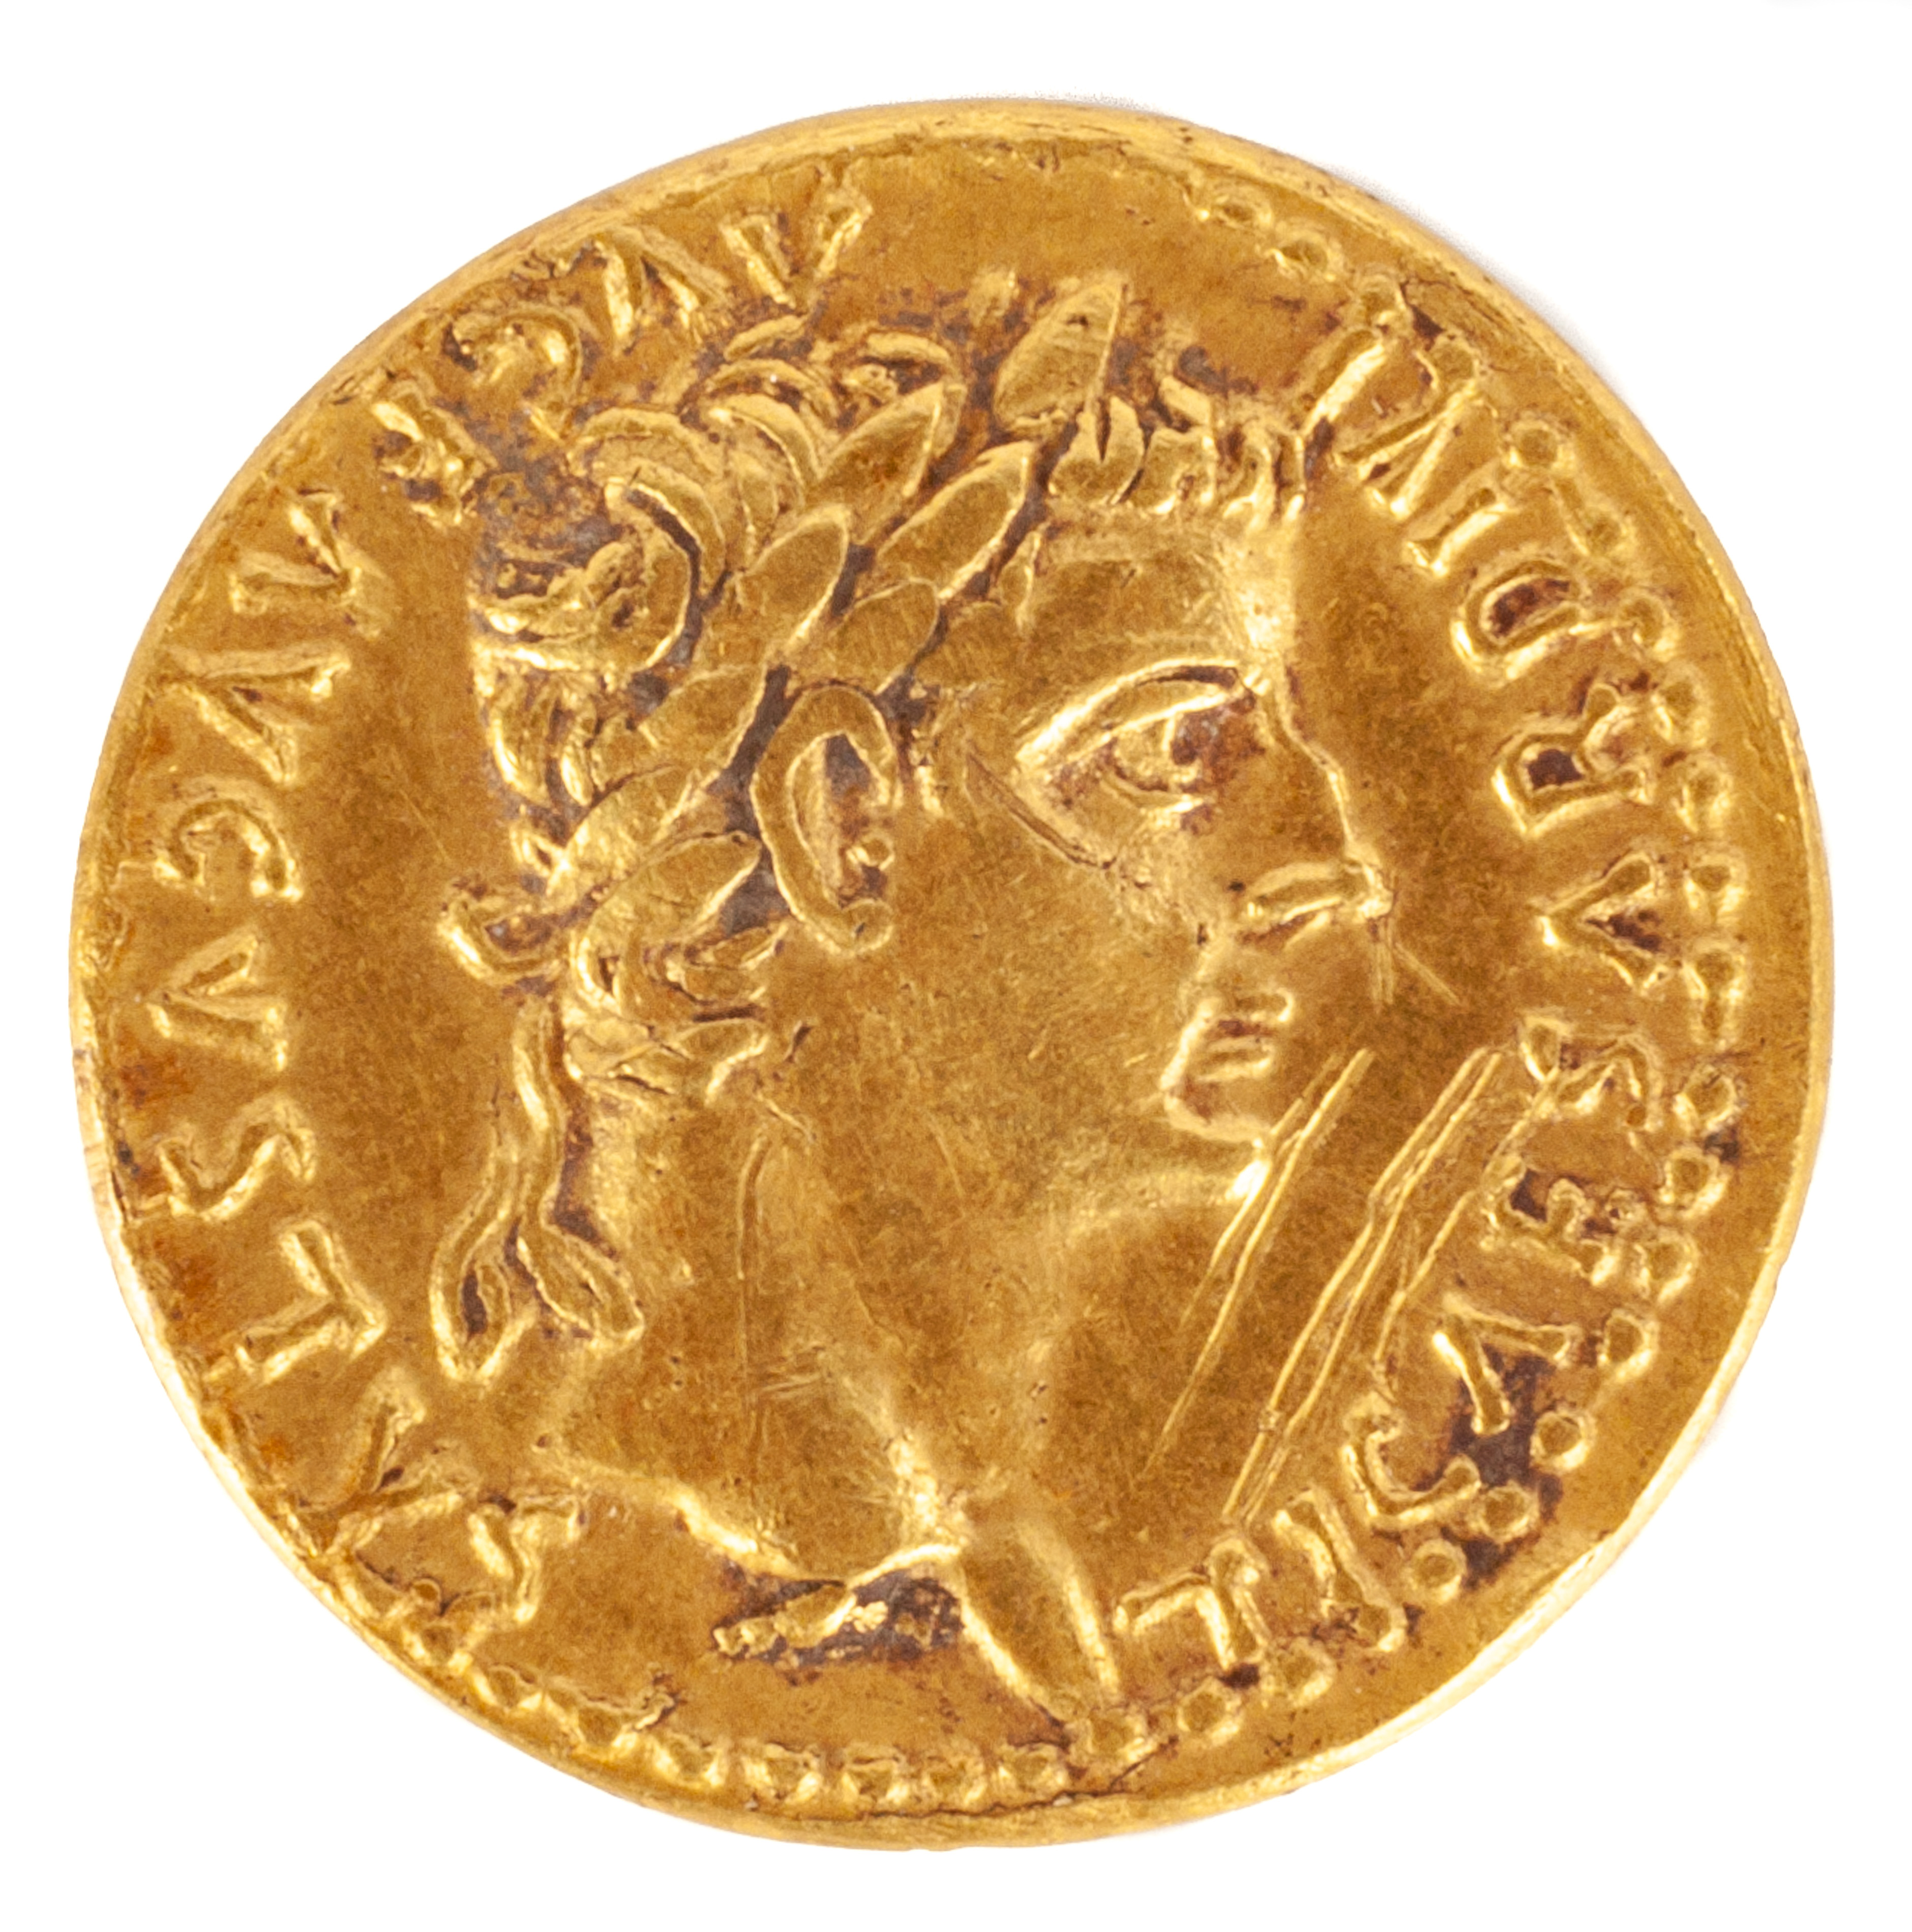 AUREUS OF TIBERIUS, (14-37AD) gold coin.